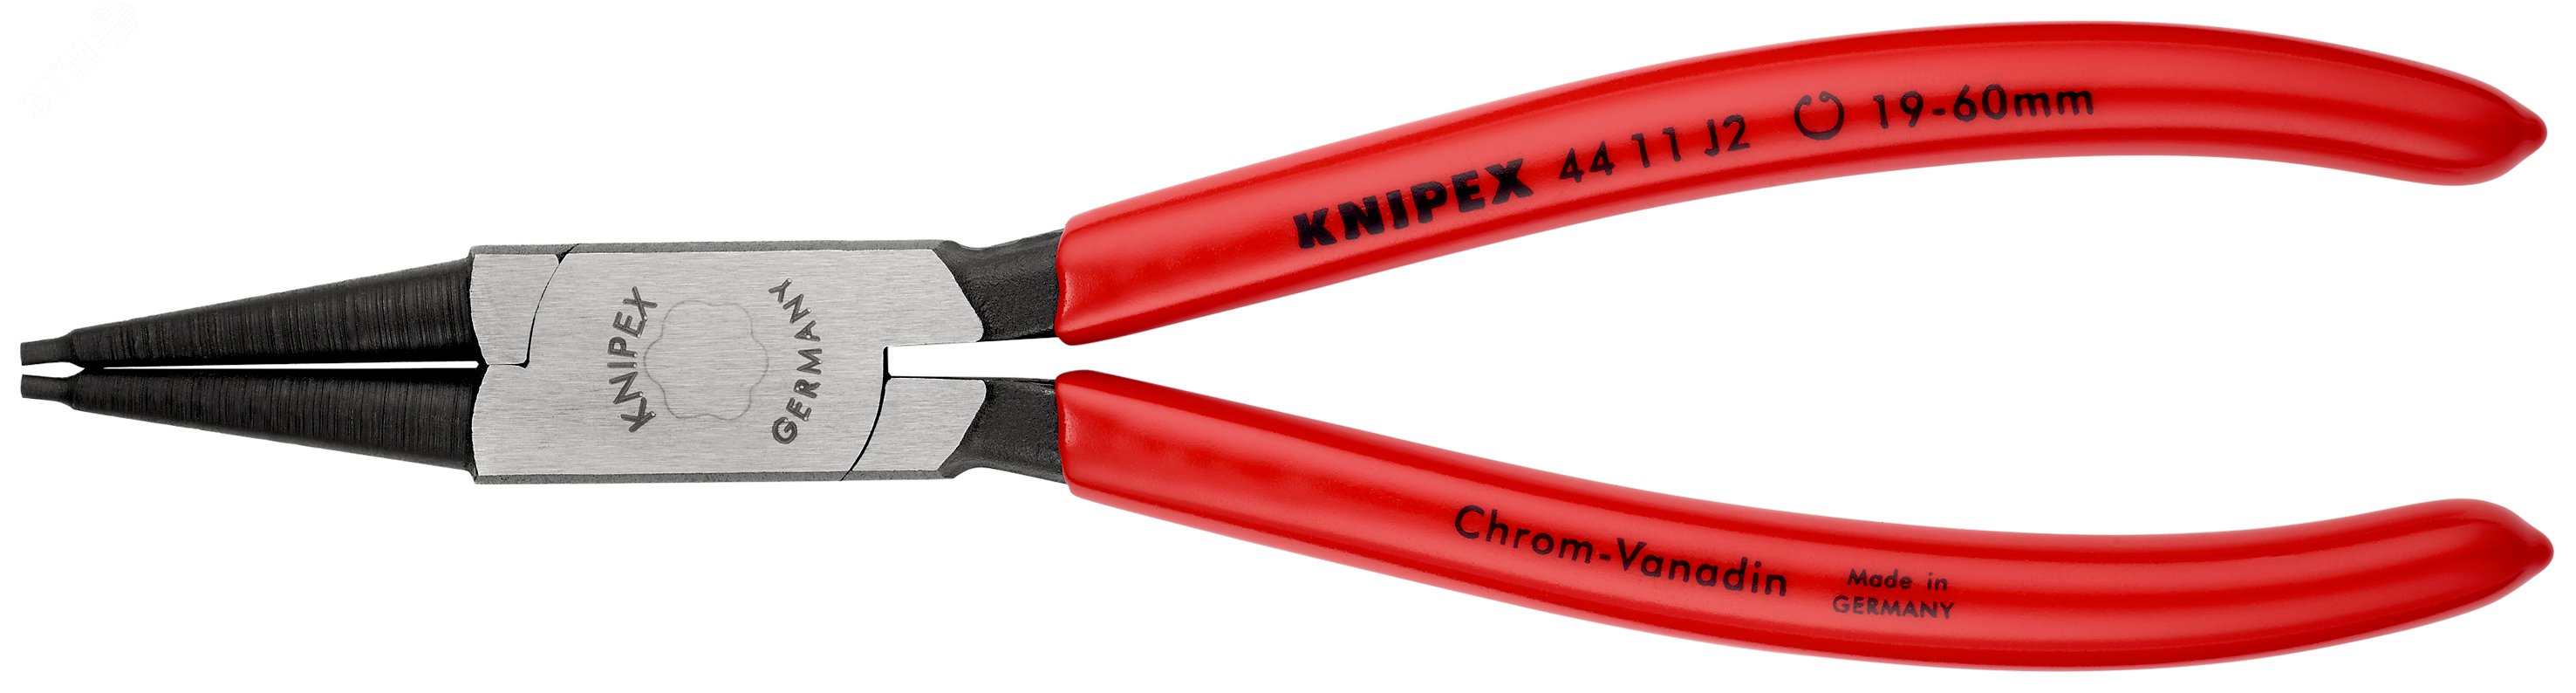 Щипцы для внутренних стопорных колец прямые губки посадочный размер 19-60мм диаметр наконечников 18мм L=180мм Cr-V черные обливные рукоятки KN-4411J2 KNIPEX - превью 3